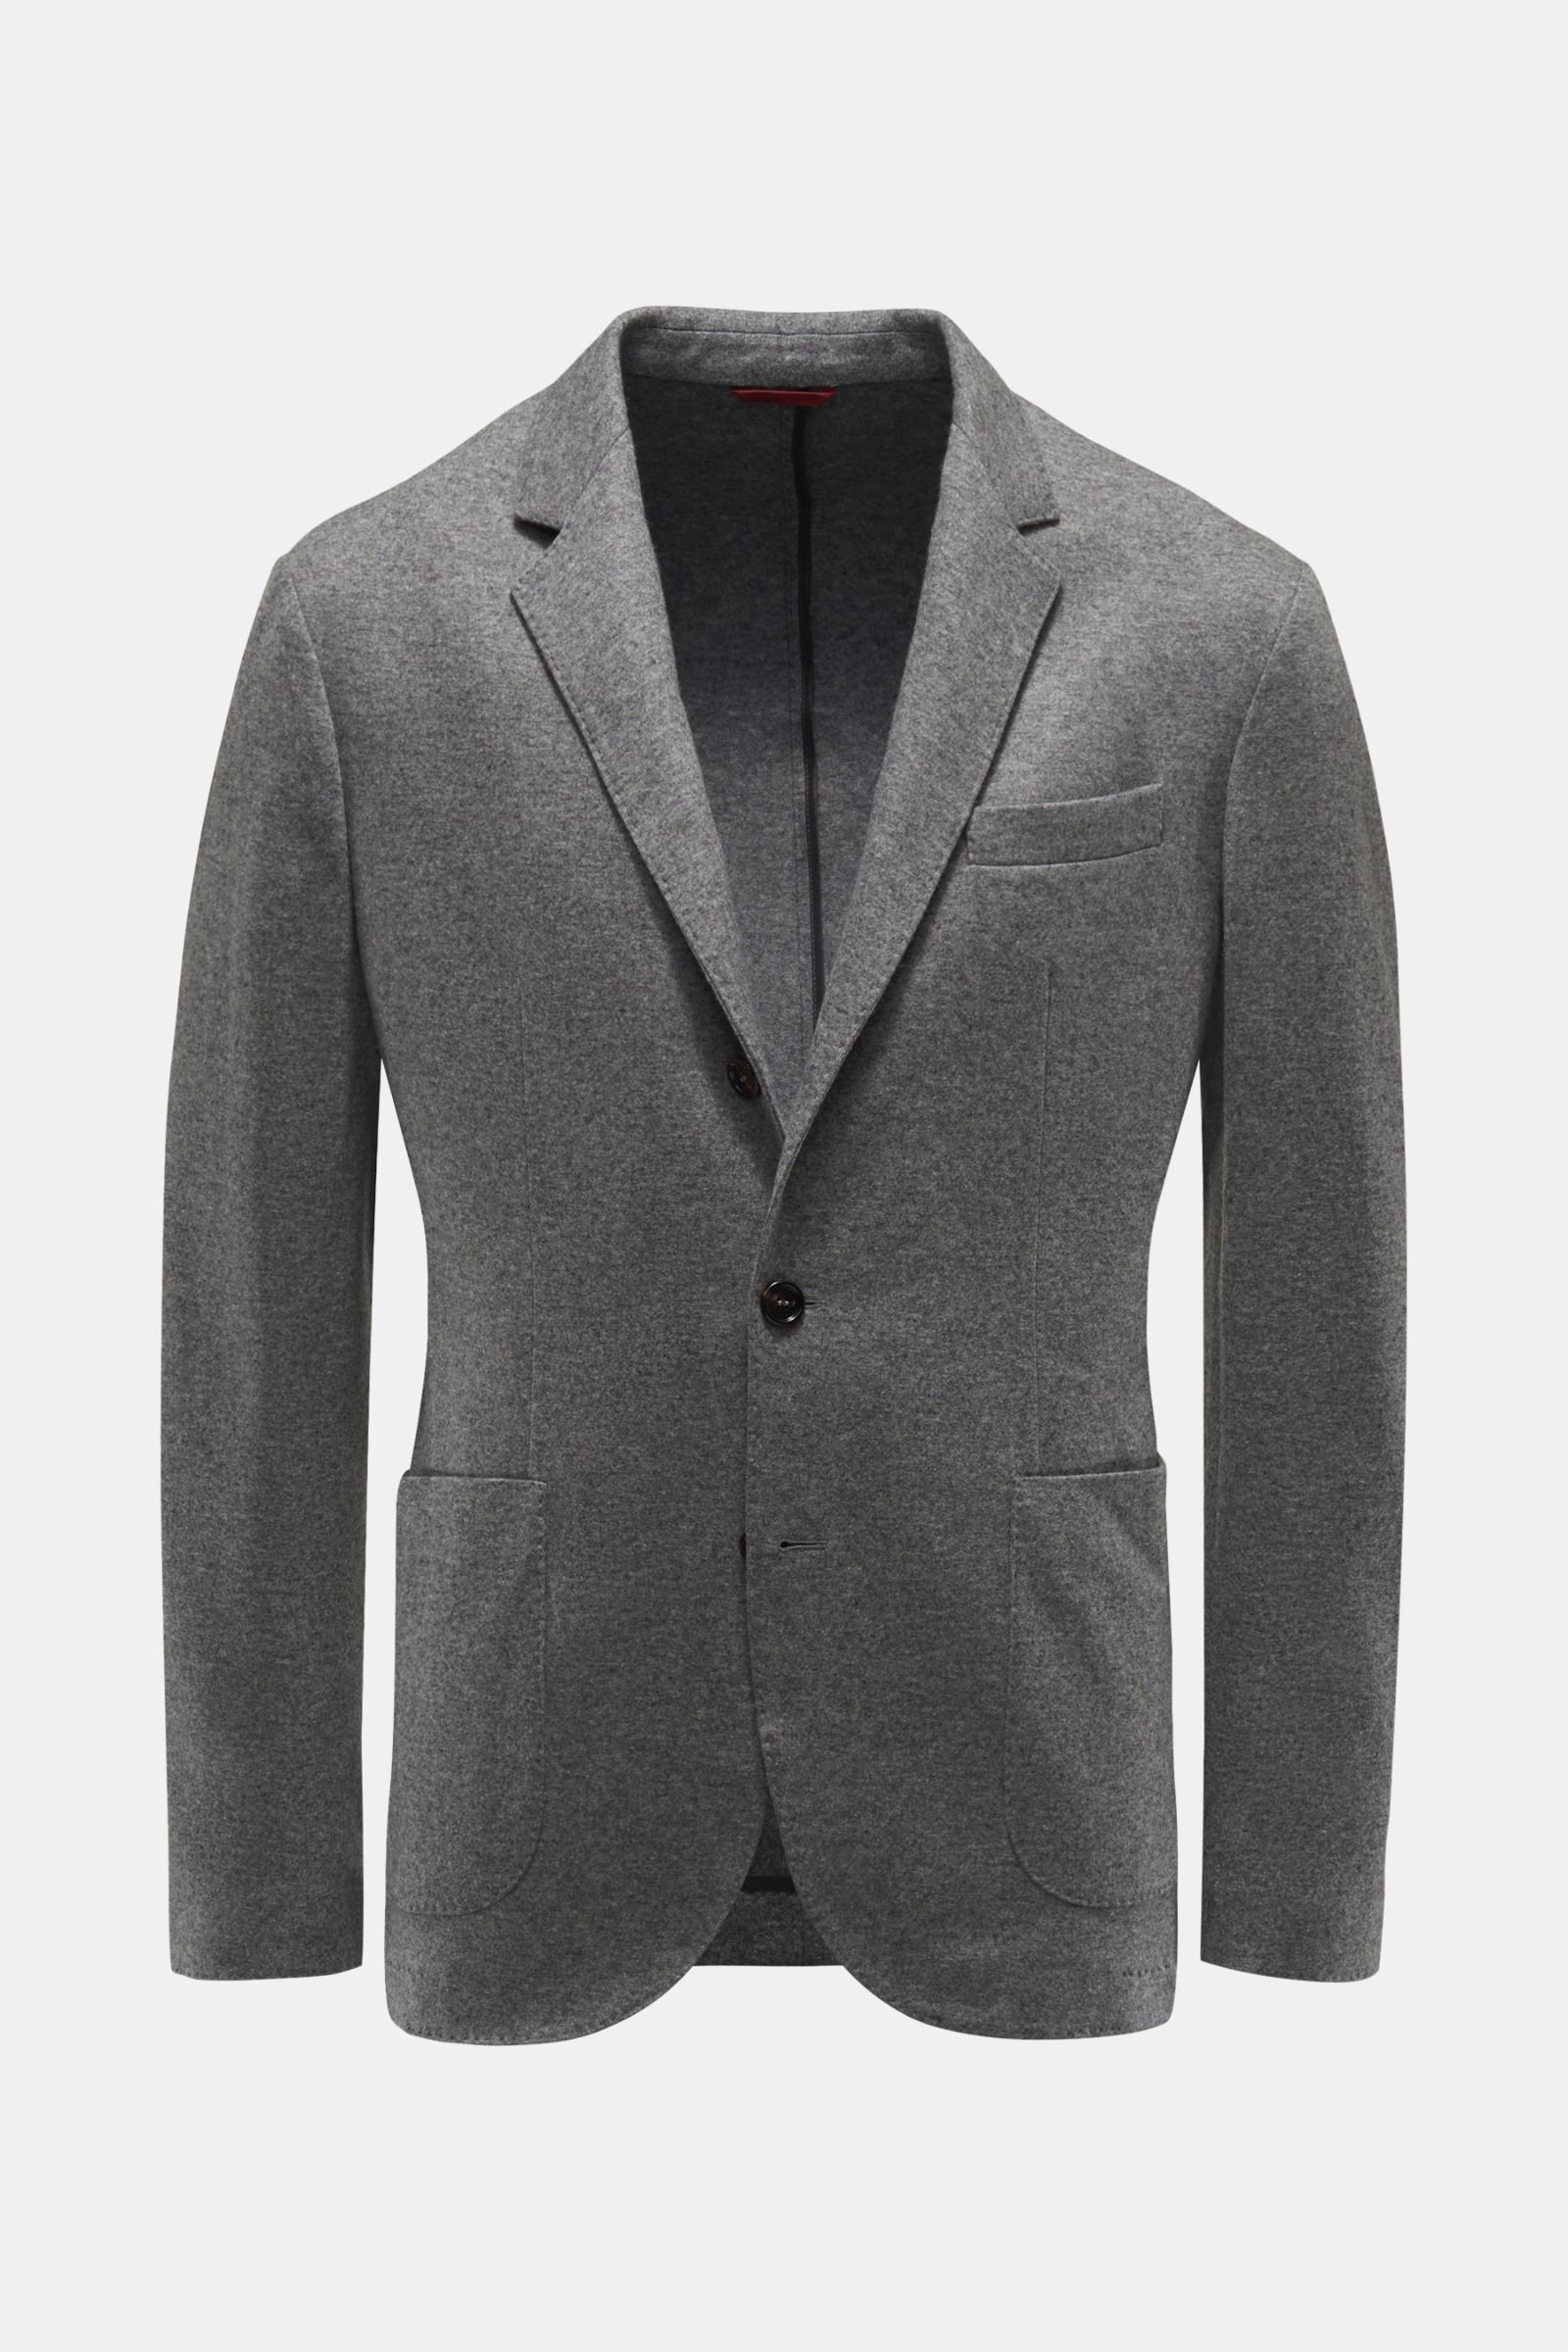 BRUNELLO CUCINELLI cashmere jersey smart-casual jacket dark grey ...